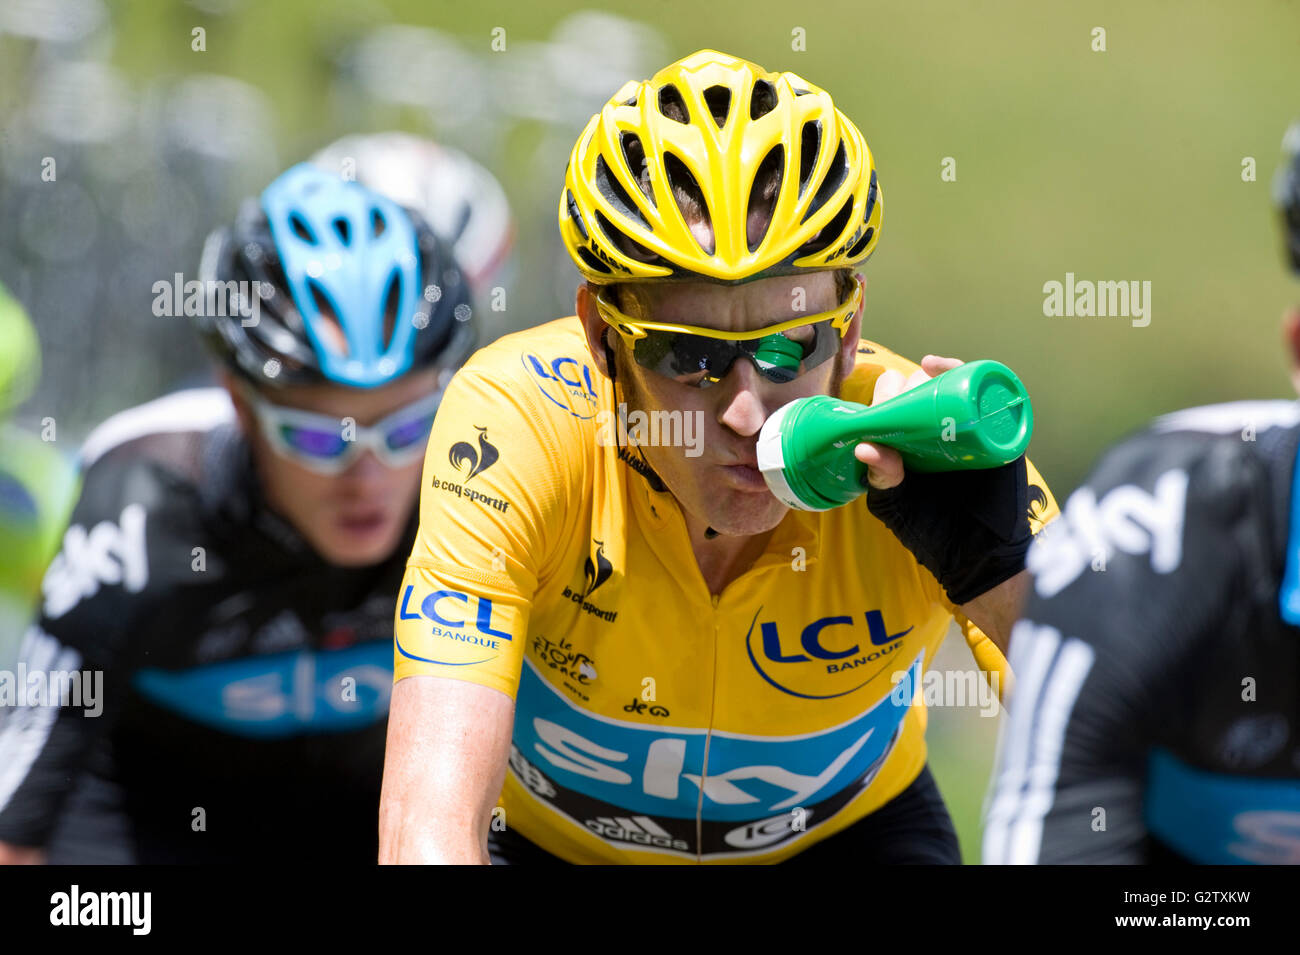 12.07.2012 Col De la Madeleine Francia. Tour de France, fase 11. Bradley Wiggins nei dirigenti maglia gialla. Foto Stock